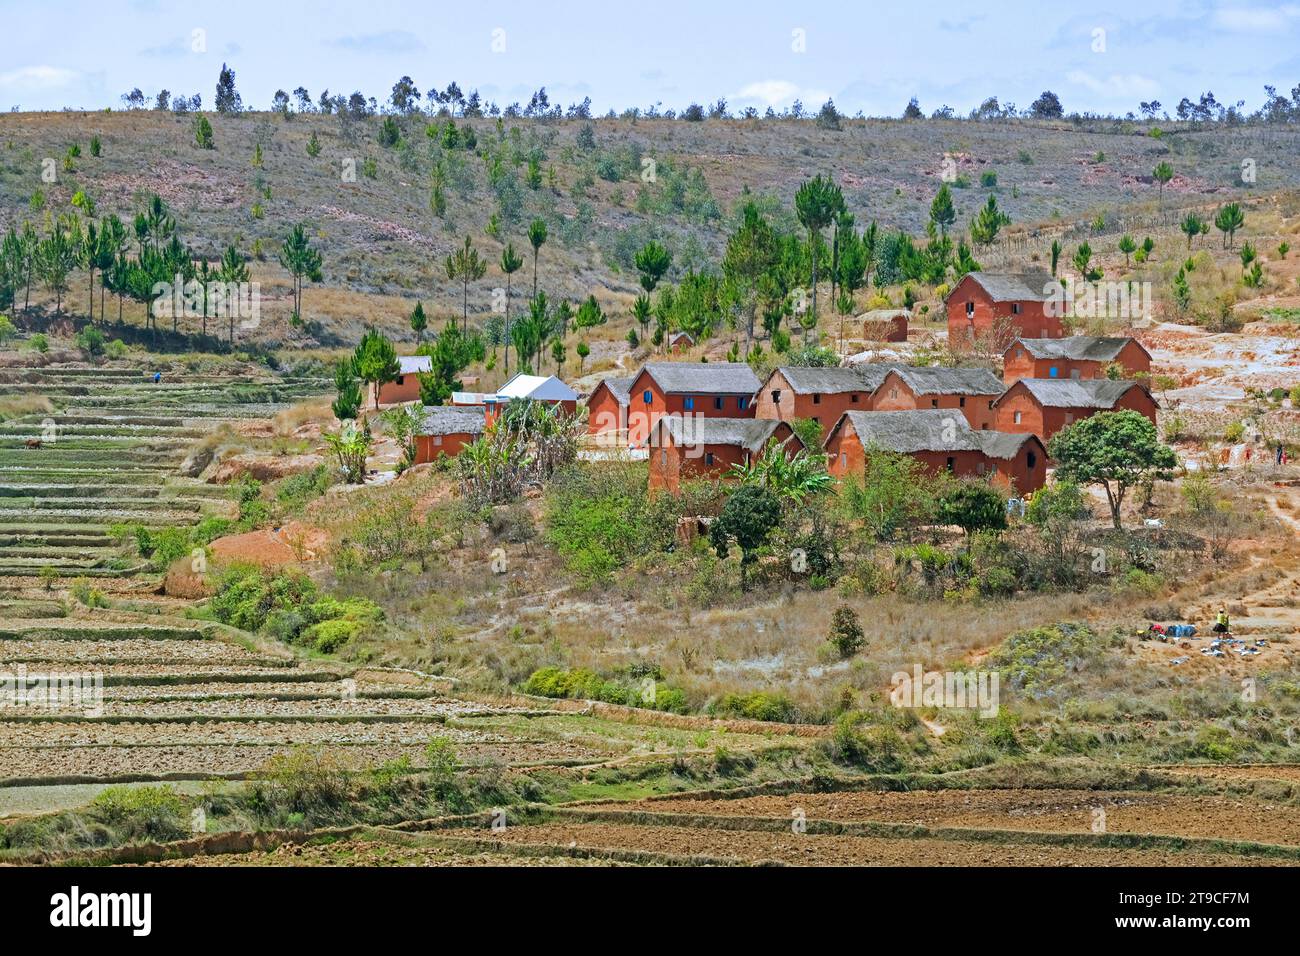 Villaggio rurale malgascio con tradizionali case in paglia di adobe rosso nelle Highlands centrali tra Antananarivo e Antsirabe, Madagascar, Africa Foto Stock